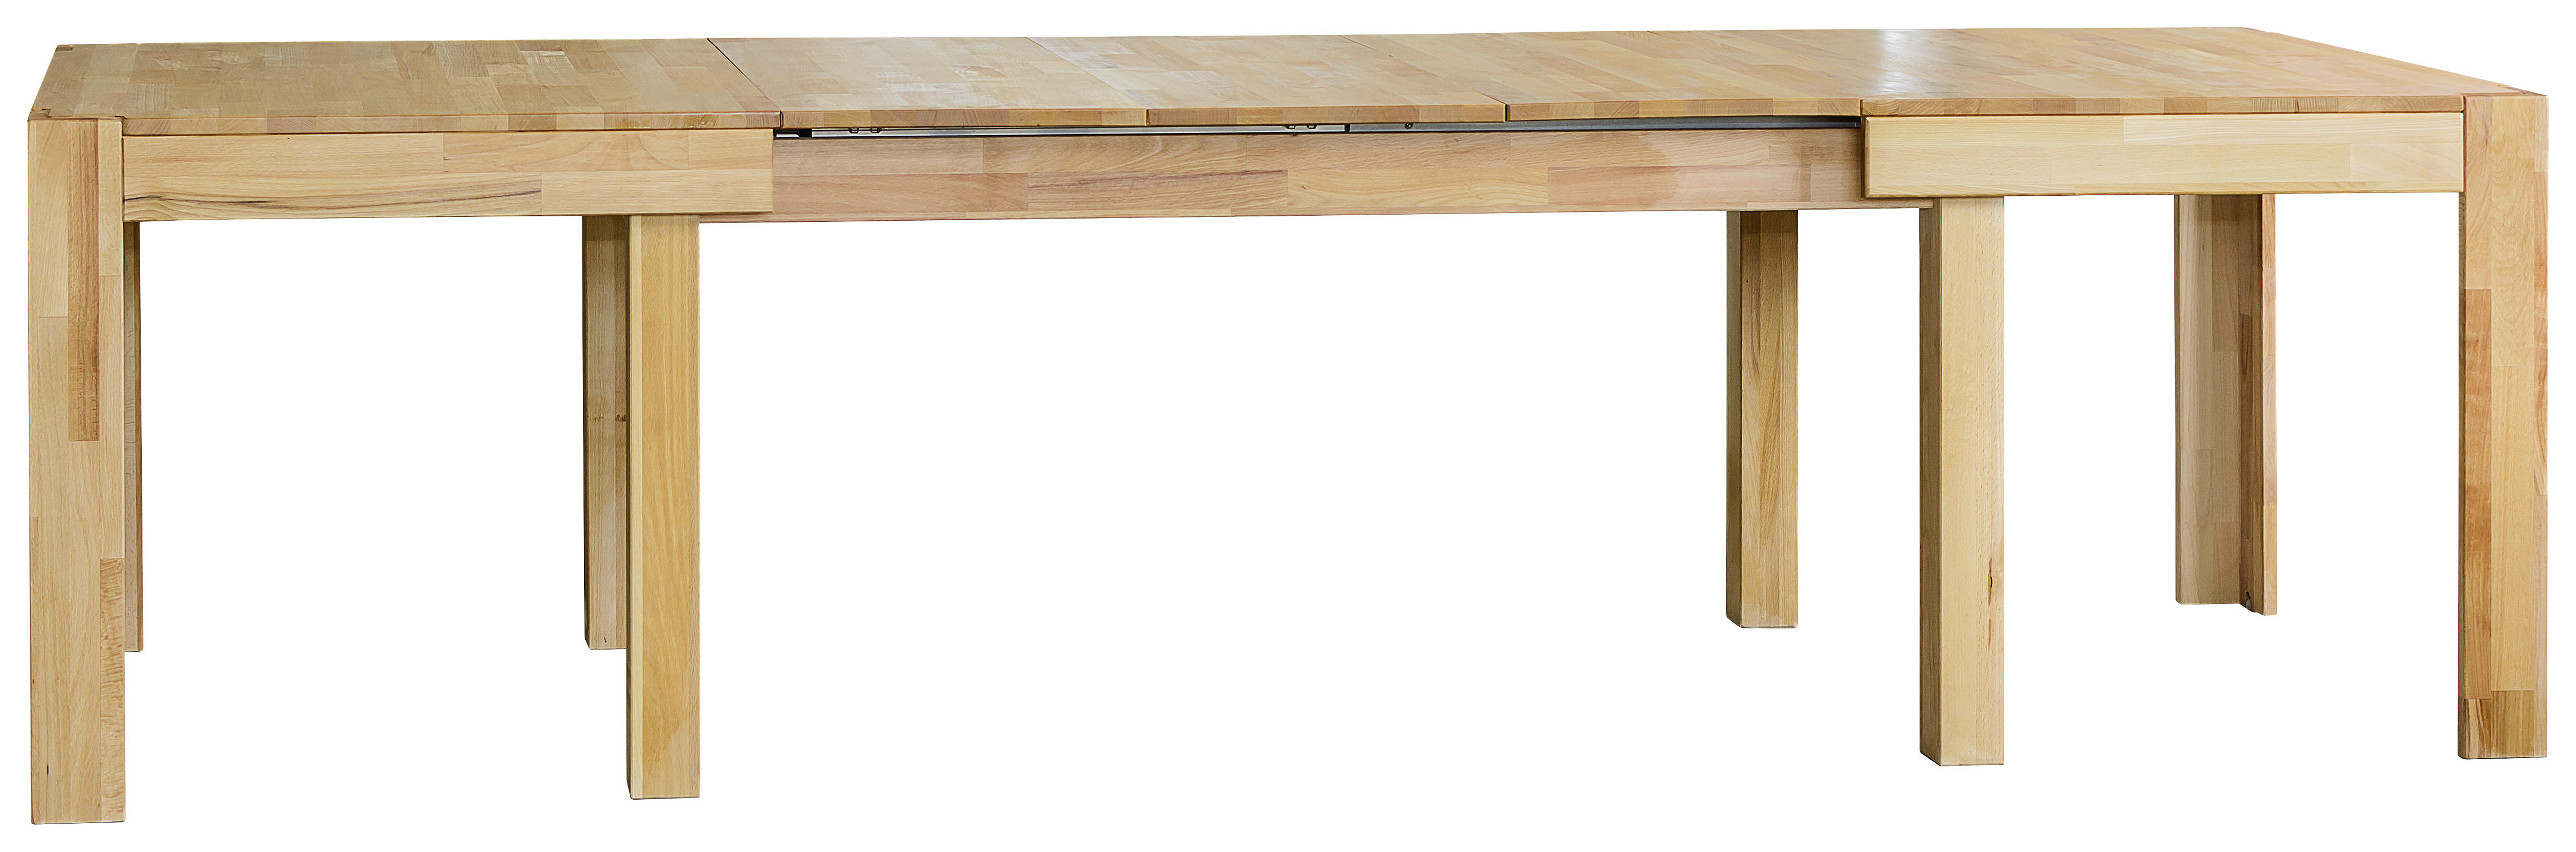 ESSTISCH in Holz 160/90/75 cm  - Buchefarben, Natur, Holz (160/90/75cm) - Livetastic